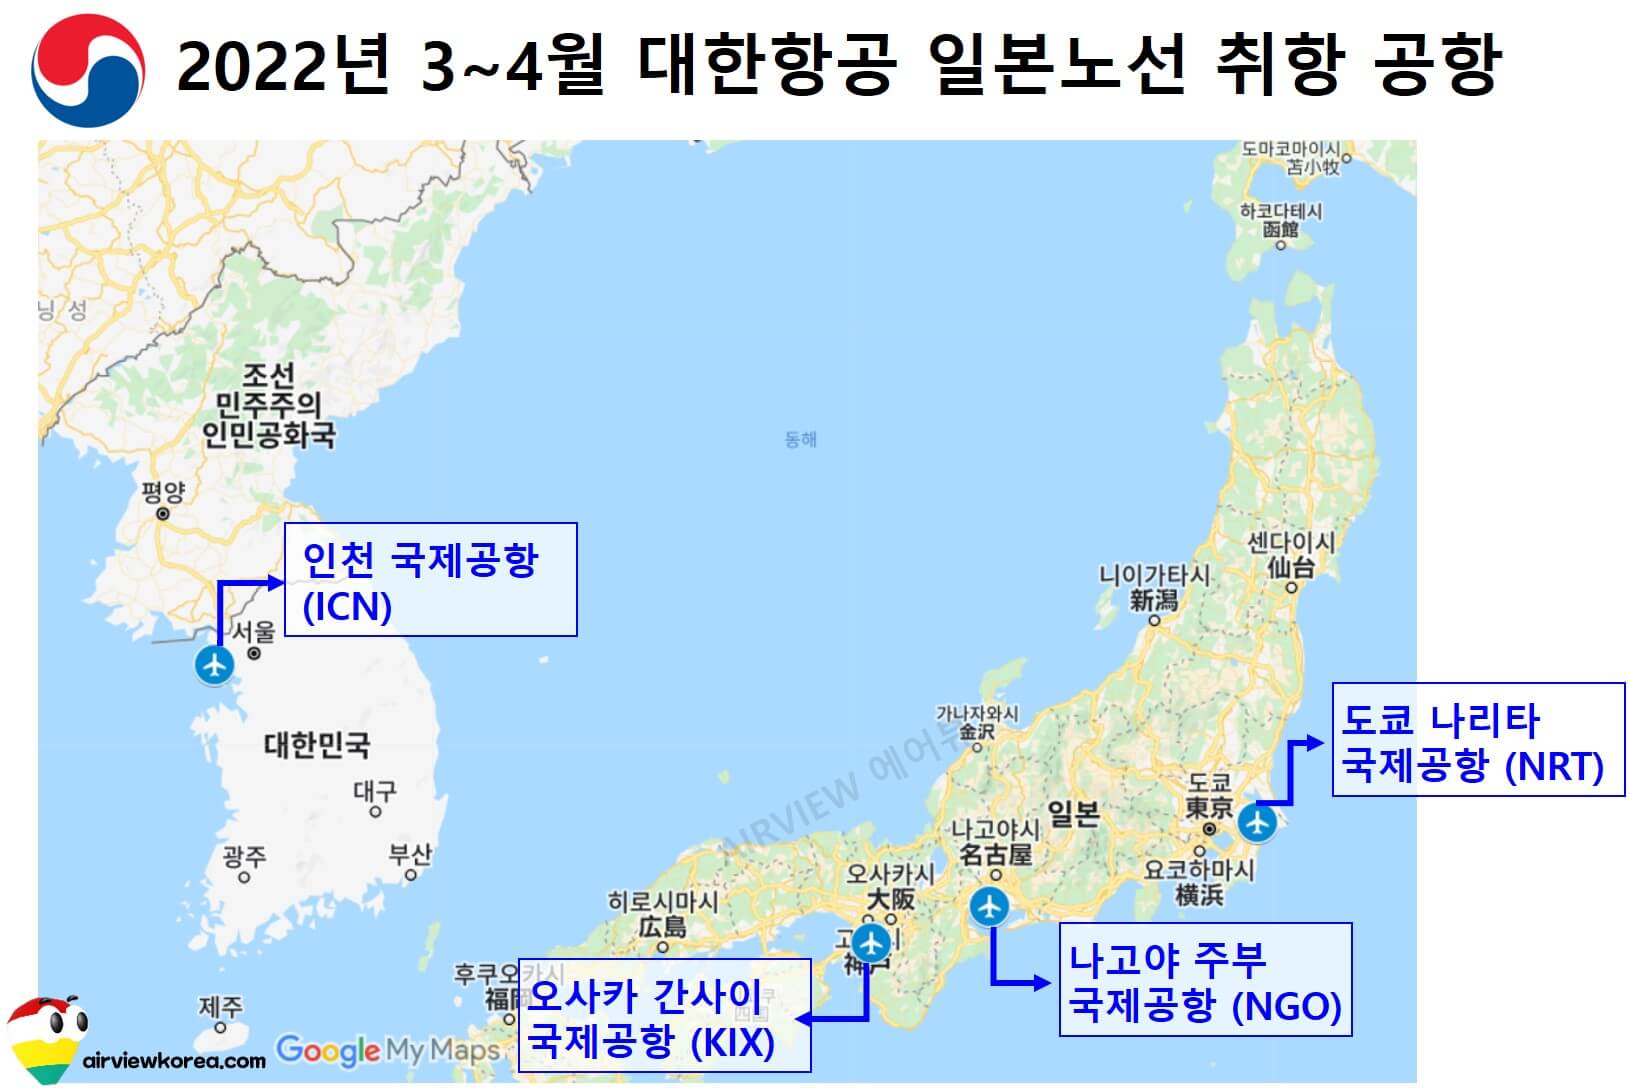 대한항공에서 2022년 3월에서 4월까지 인천국제공항을 출발하여 일본 어느 공항에 취항하는지 공항 정보를 나타낸 지도